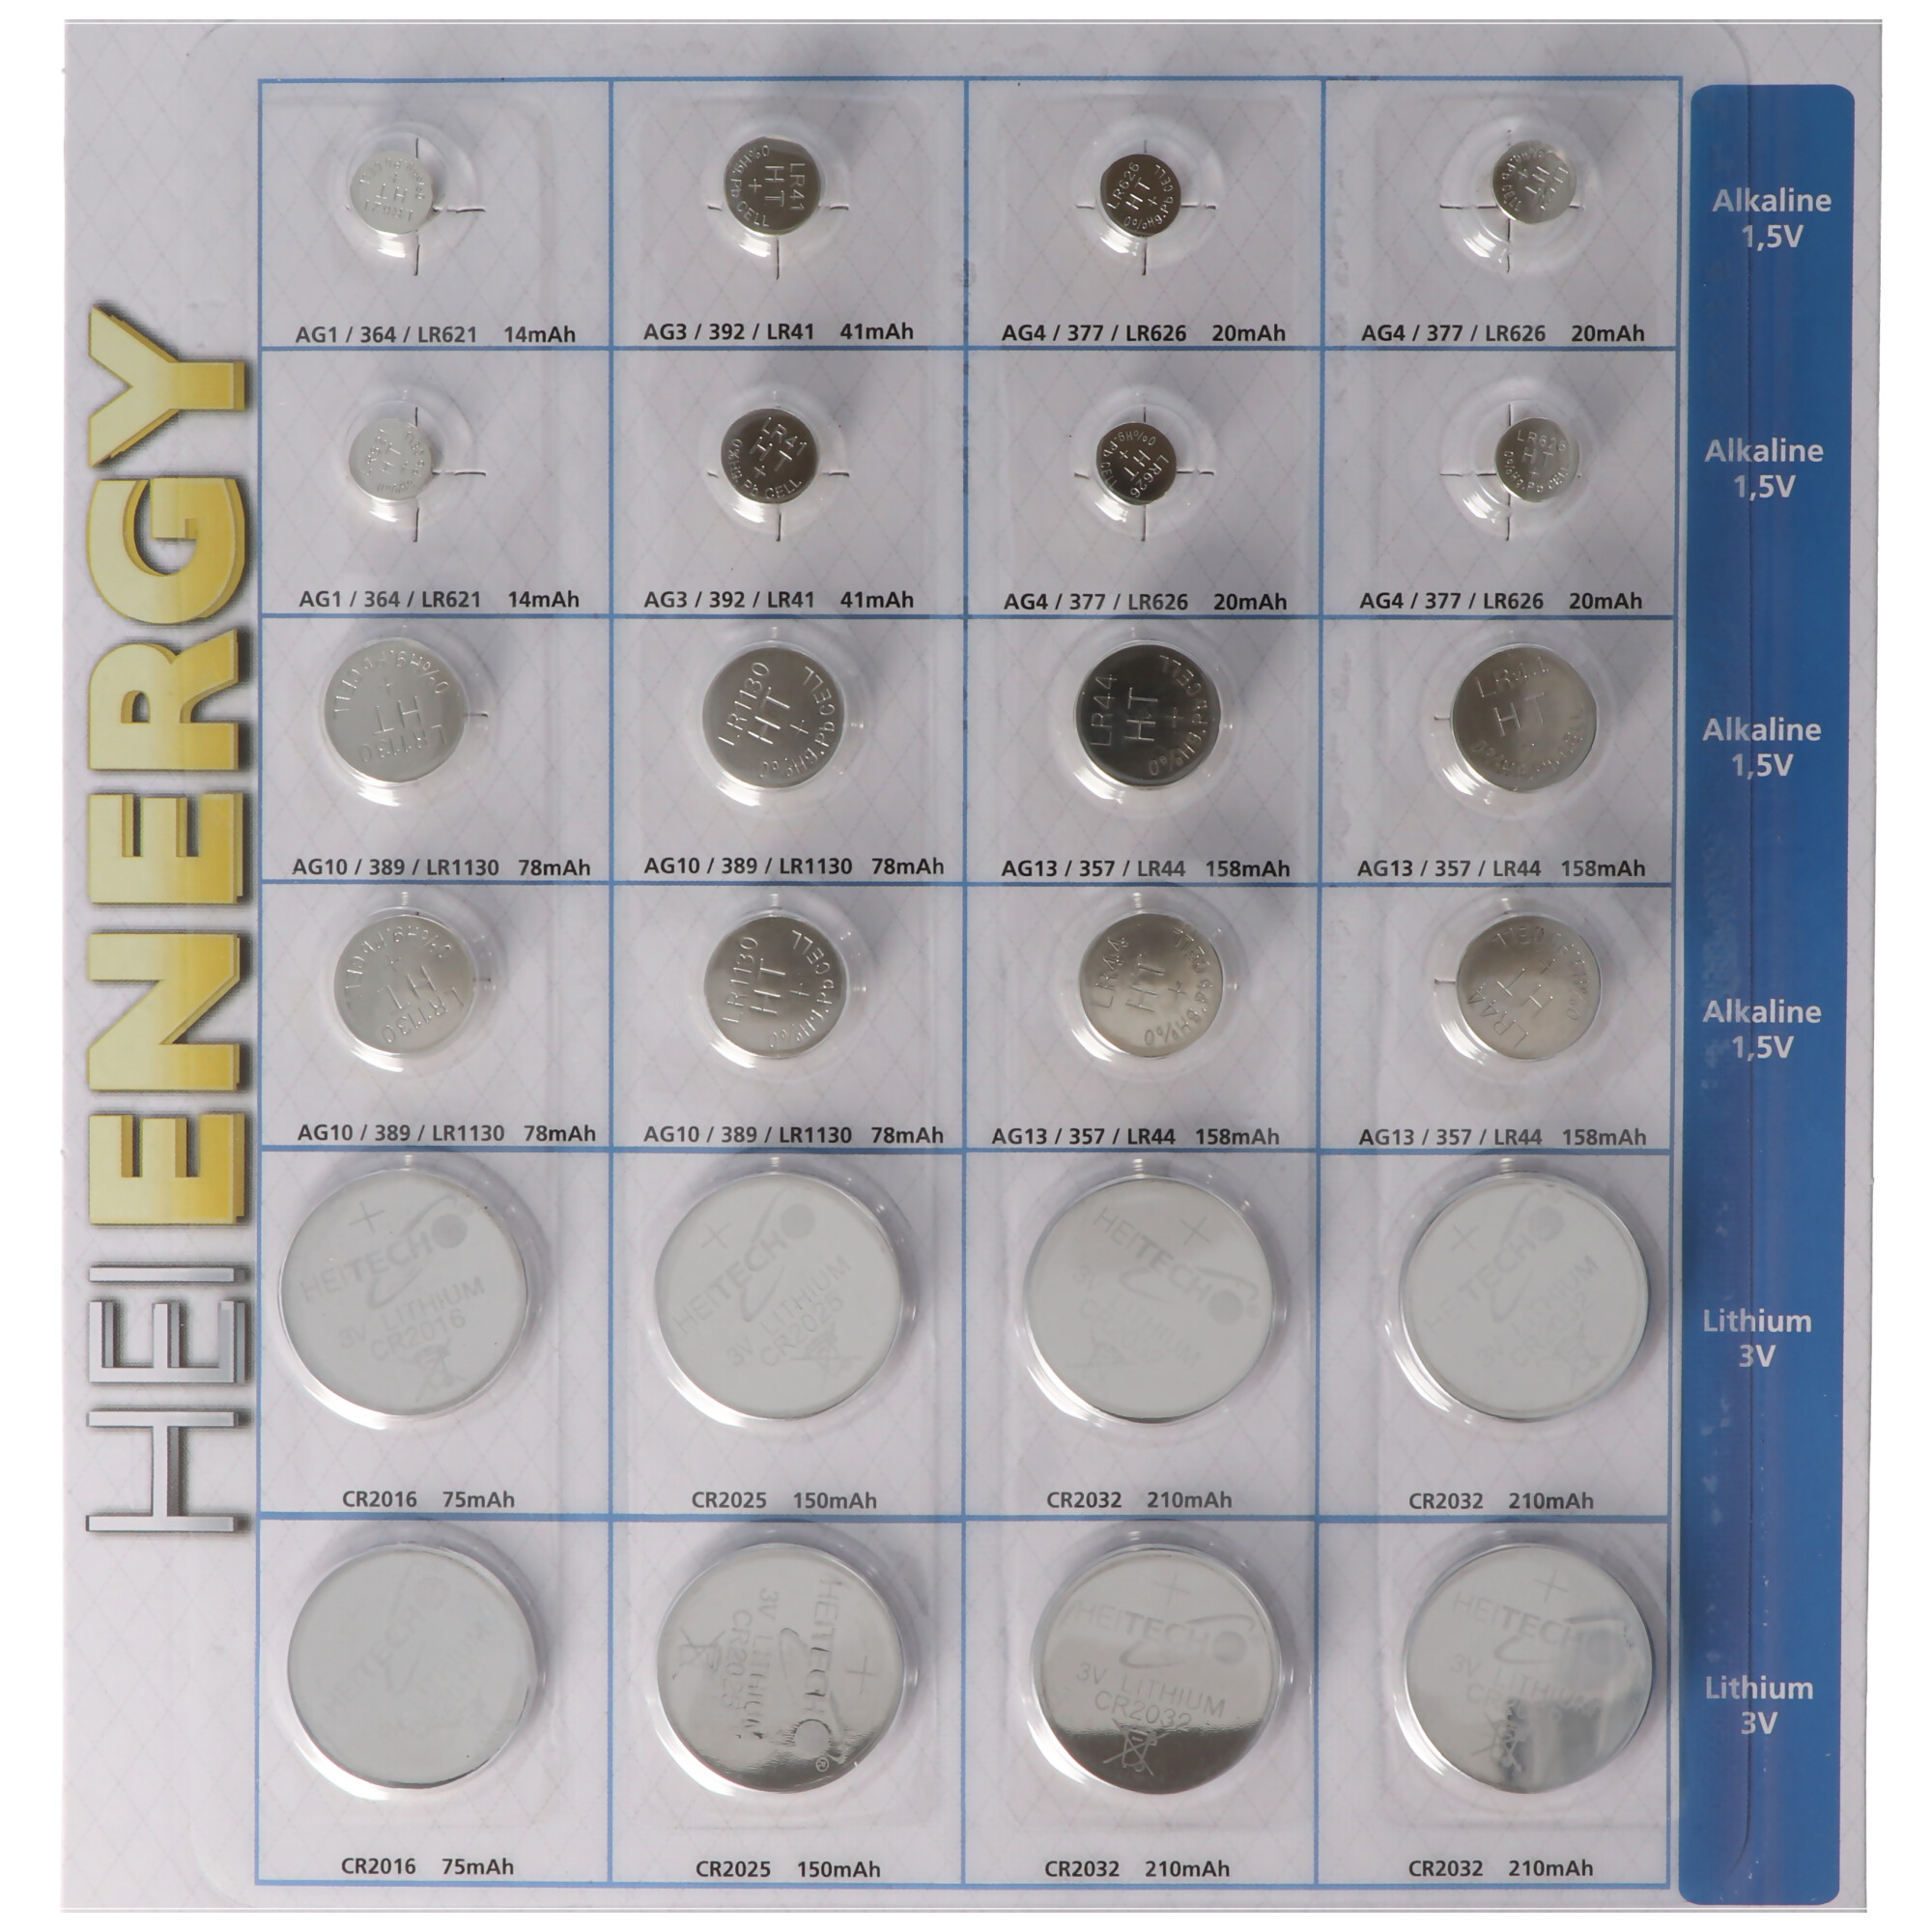 24 Stück Alkaline und Lithium Knopfzellen Batterien, für viele Anwendungsgebiete, sortiert im Set